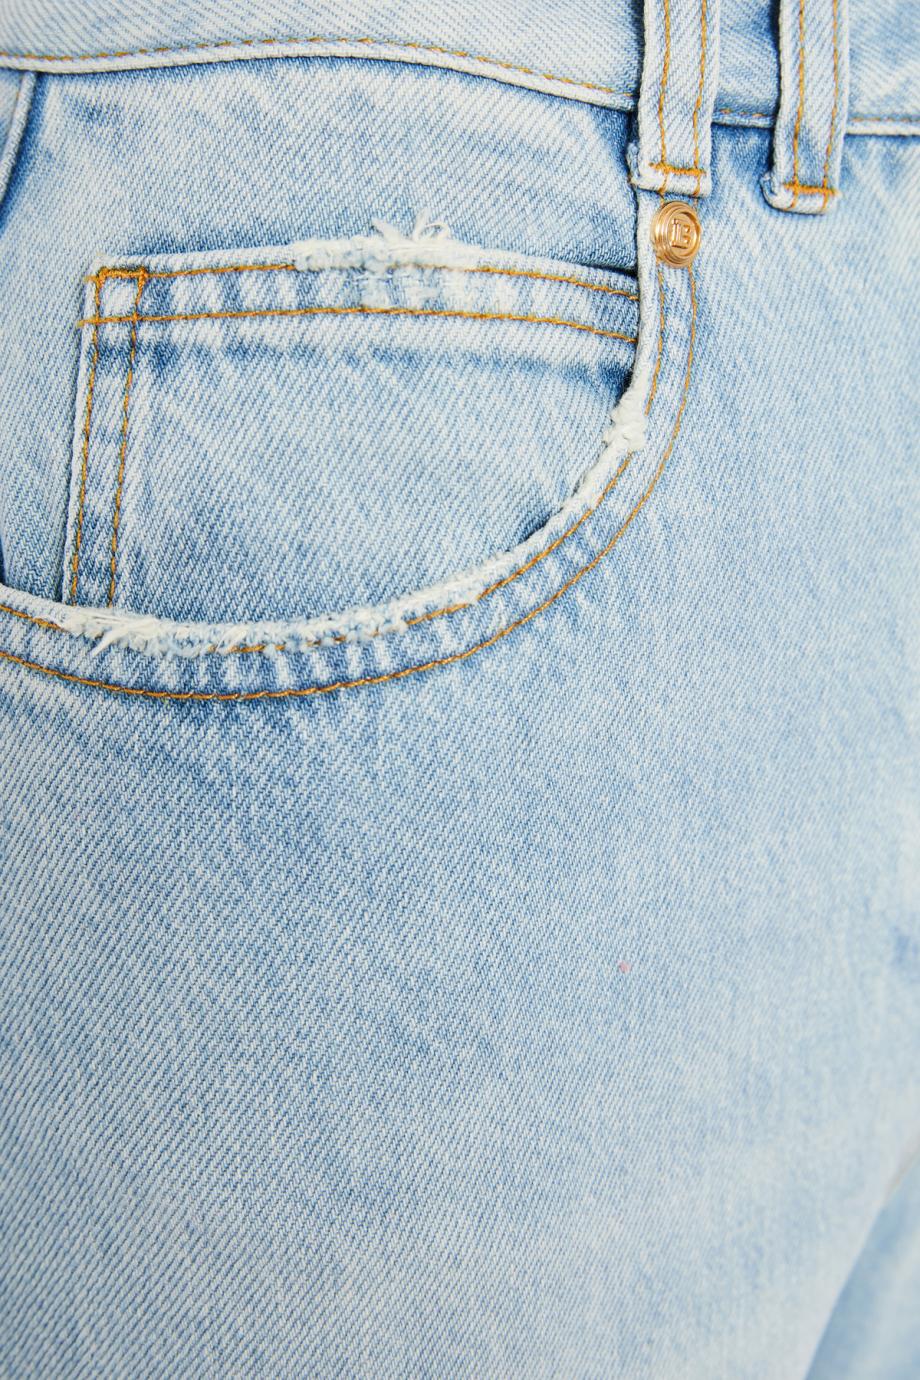 Cotton denim jeans 